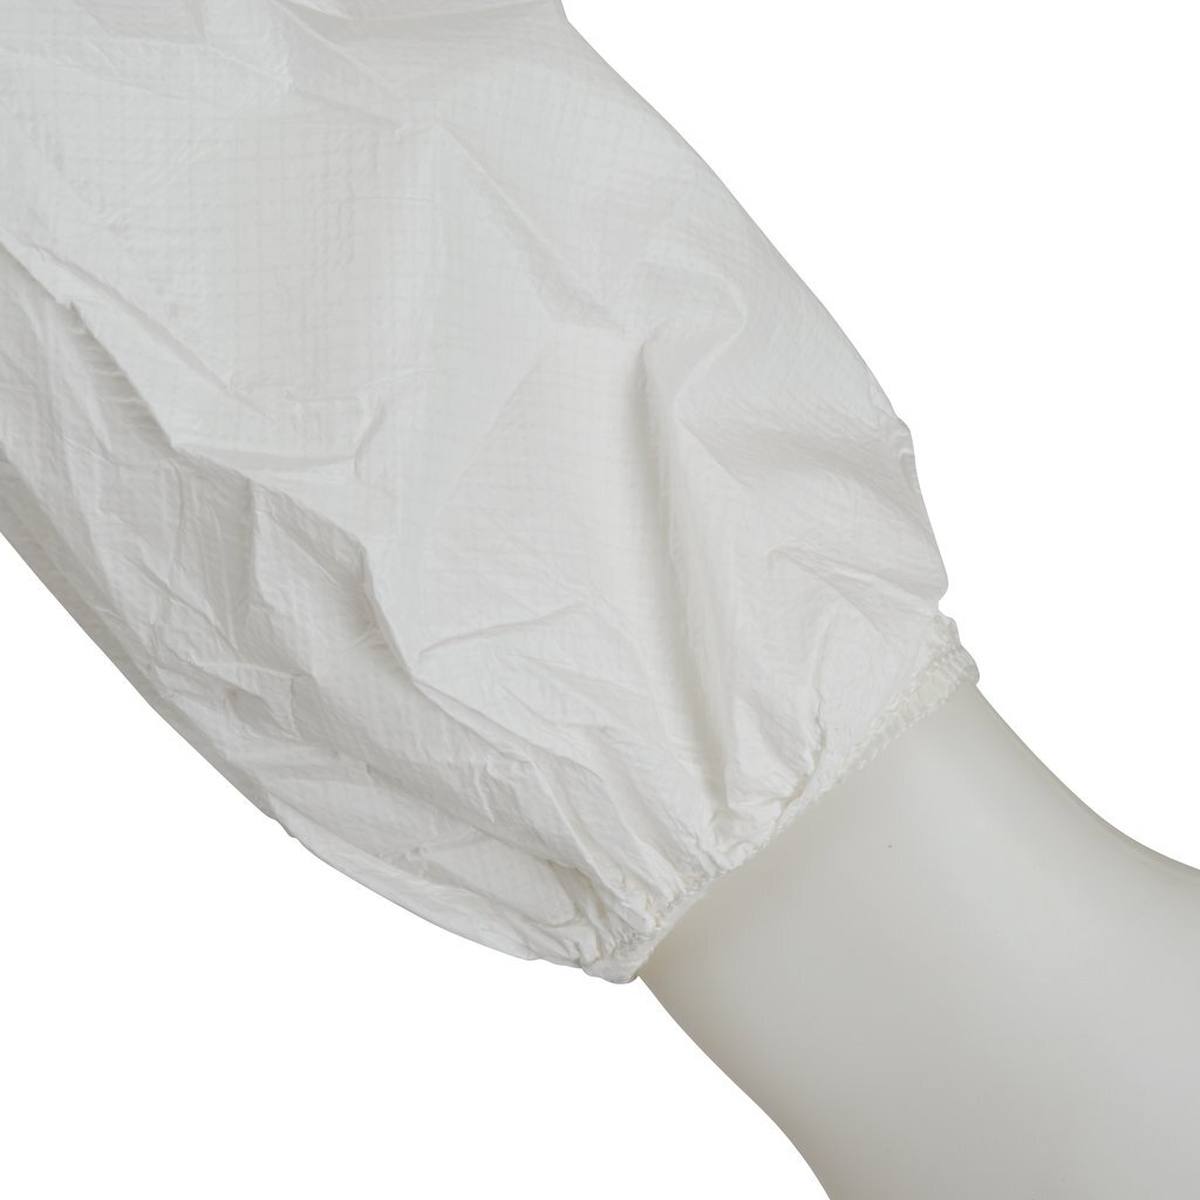 Tuta 3M 4510, bianca, TIPO 5/6, taglia L, materiale laminato PE microporoso, polsini elasticizzati